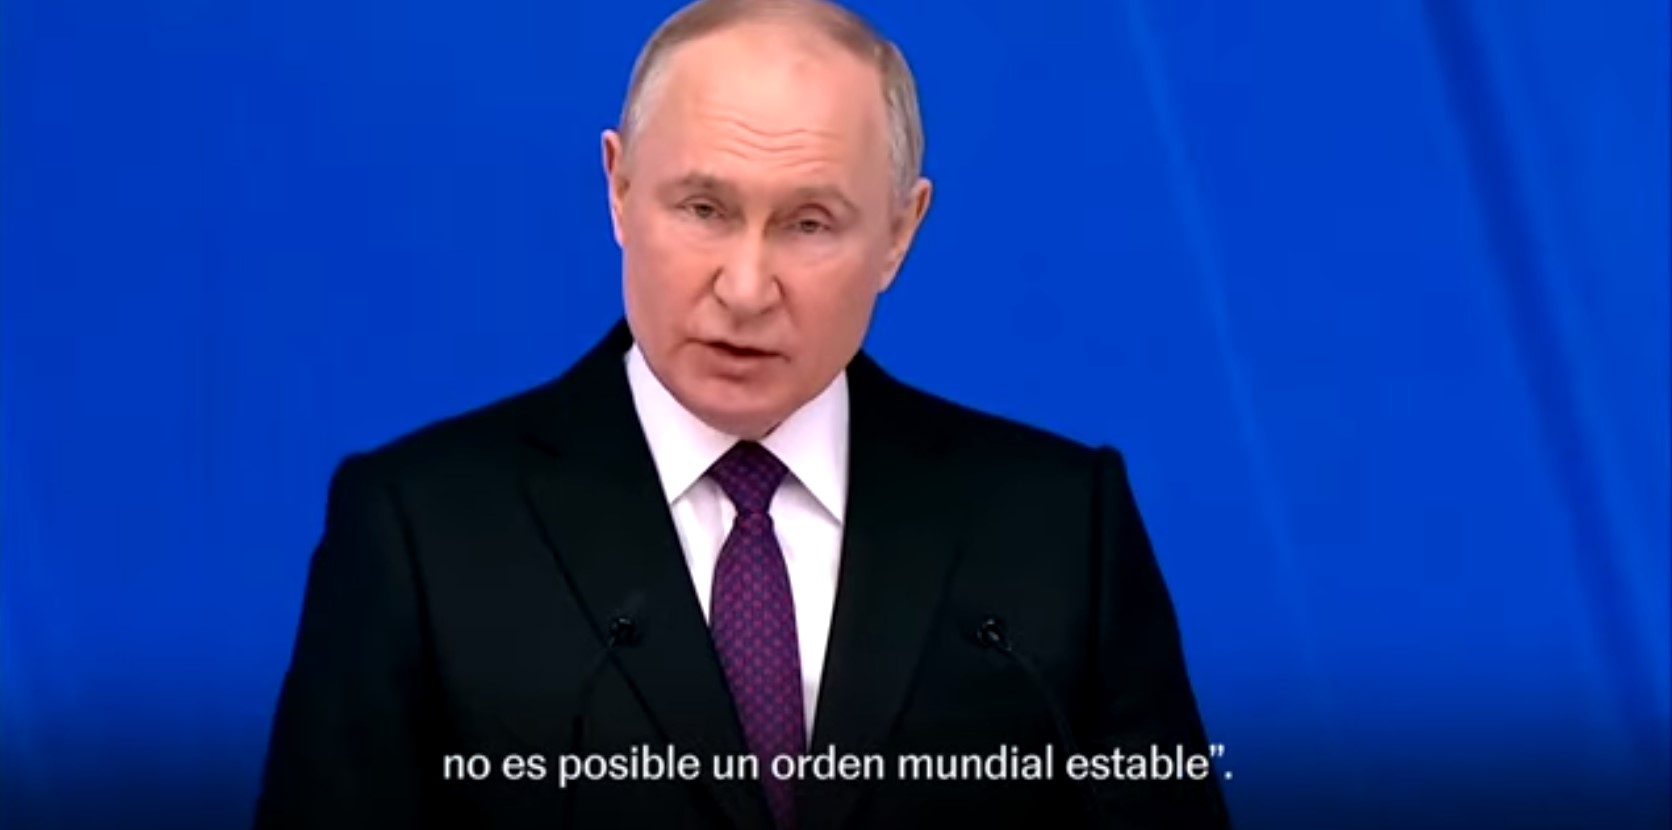 Putin en su discurso a la Nación: “Tenemos armas para golpear a los países occidentales”